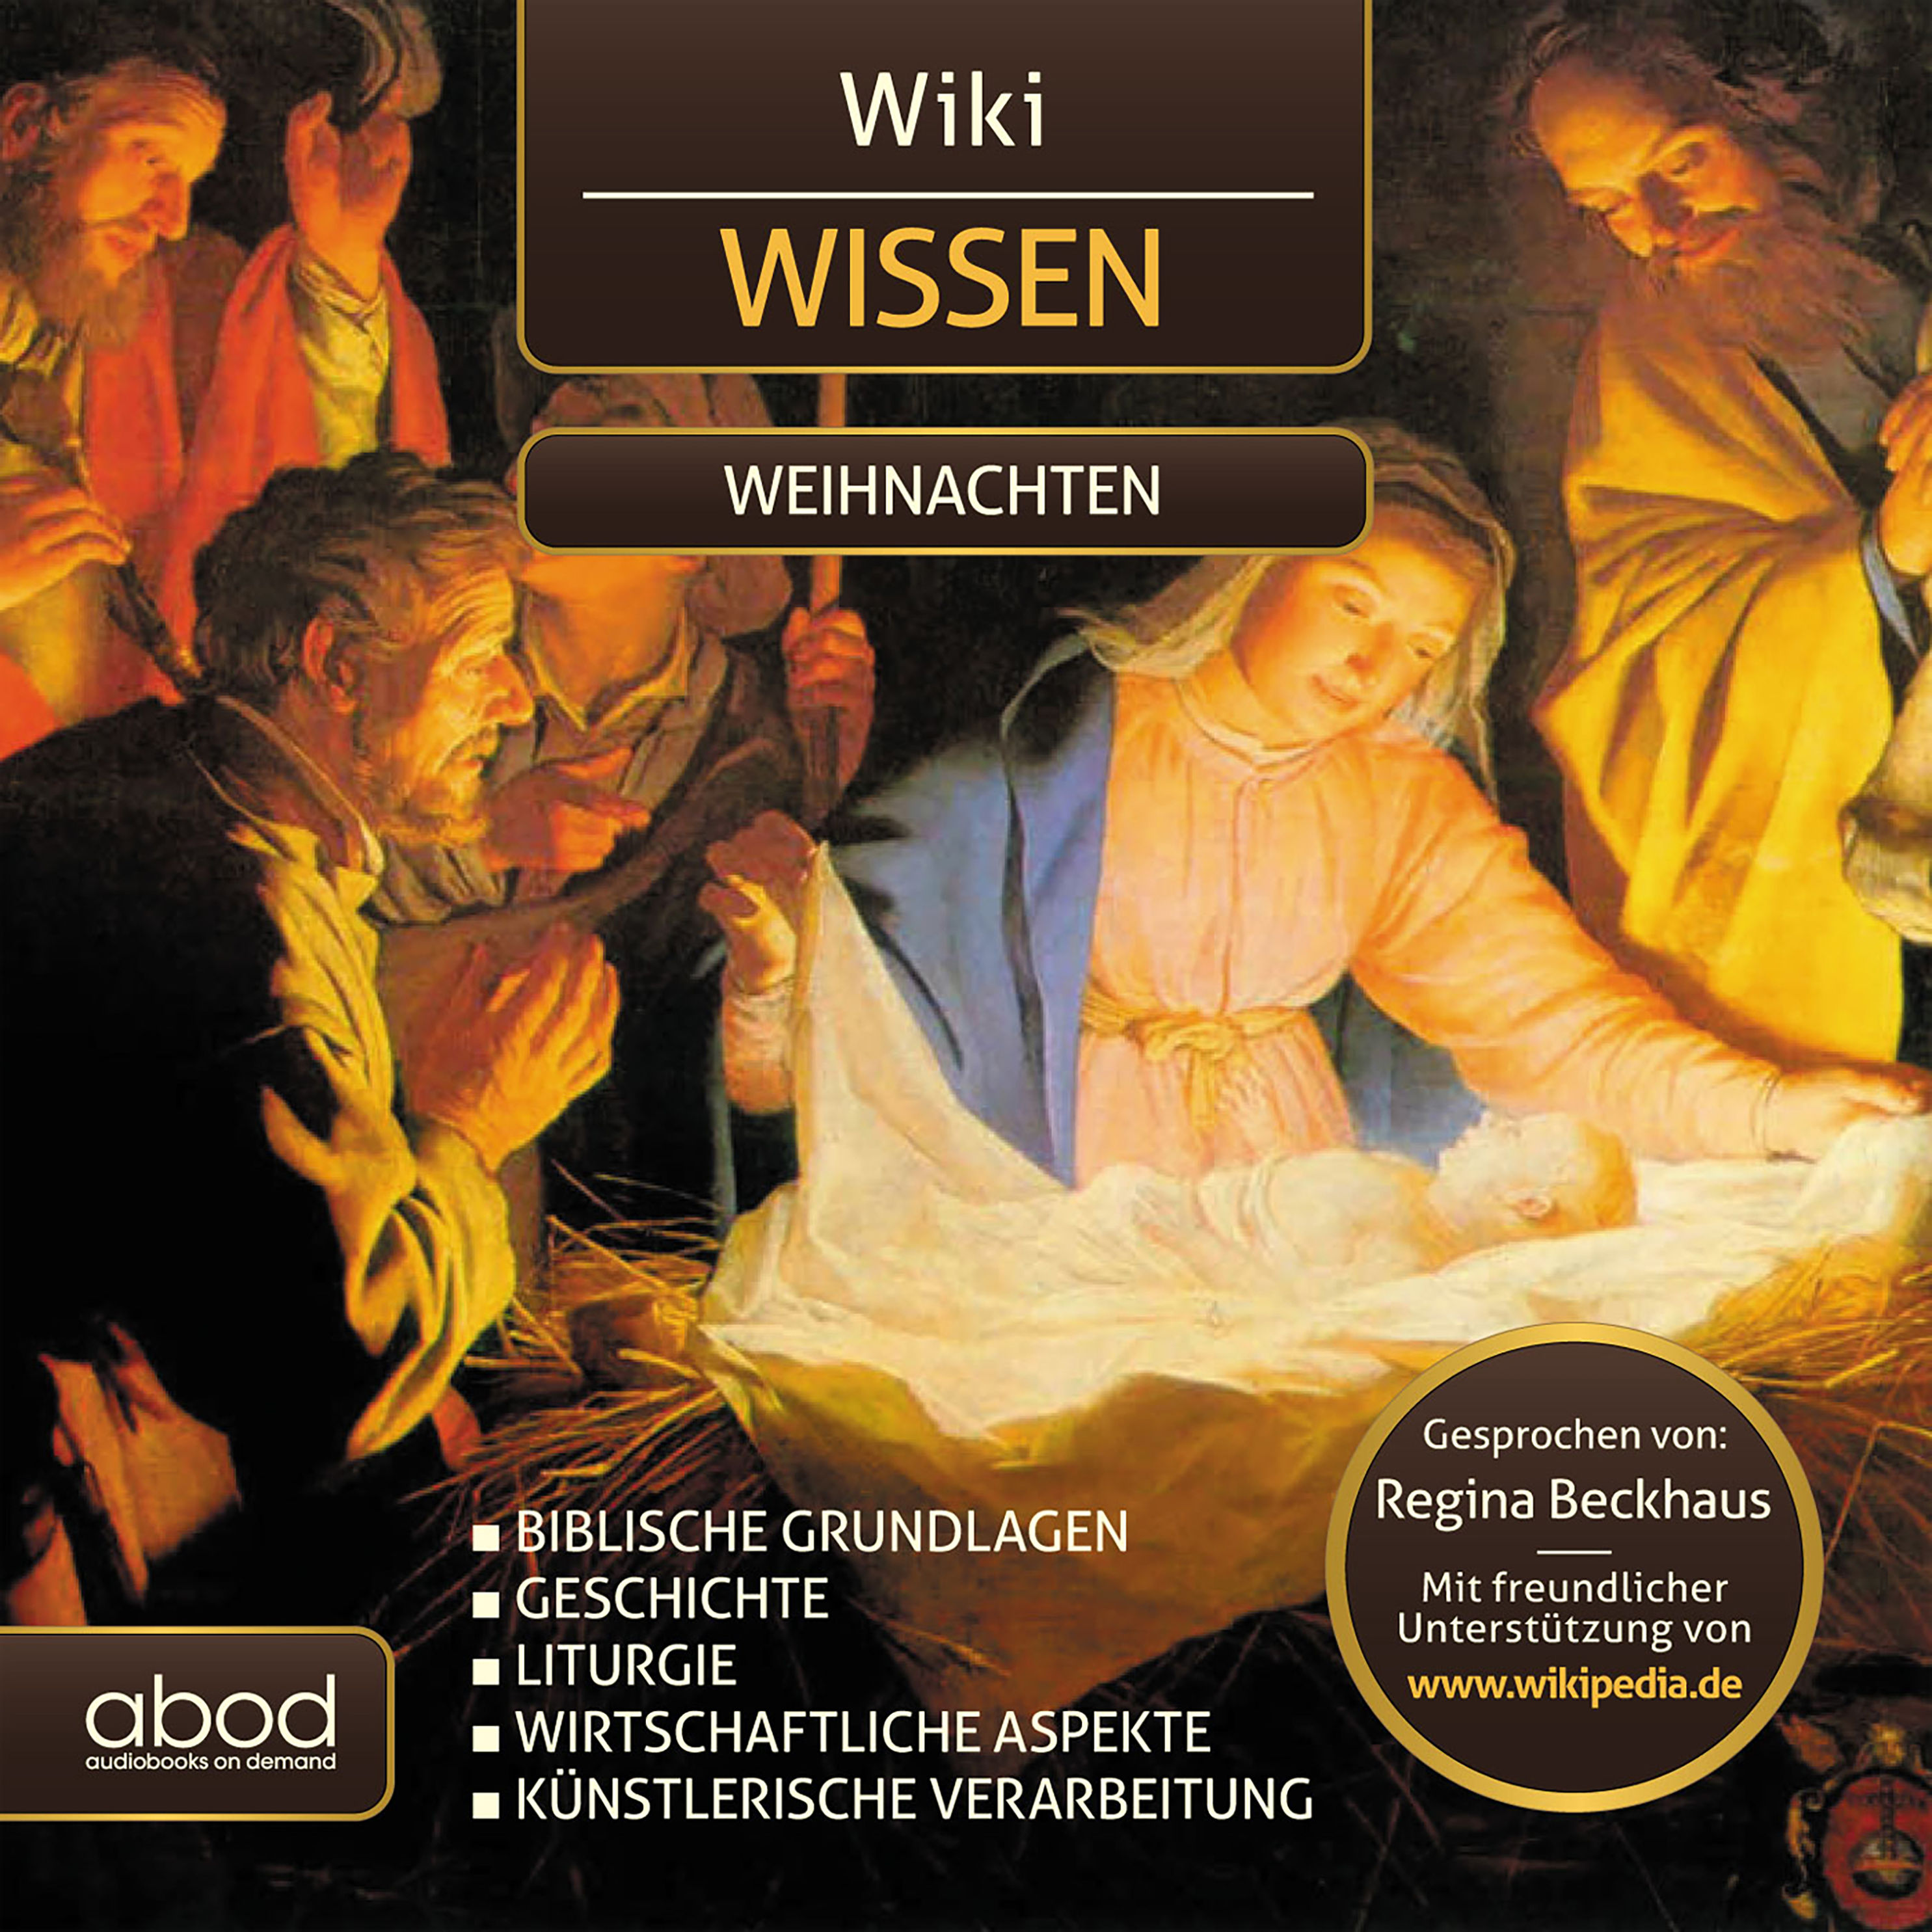 Wiki Wissen - Weihnachten Hörbuch downloaden bei Weltbild.at